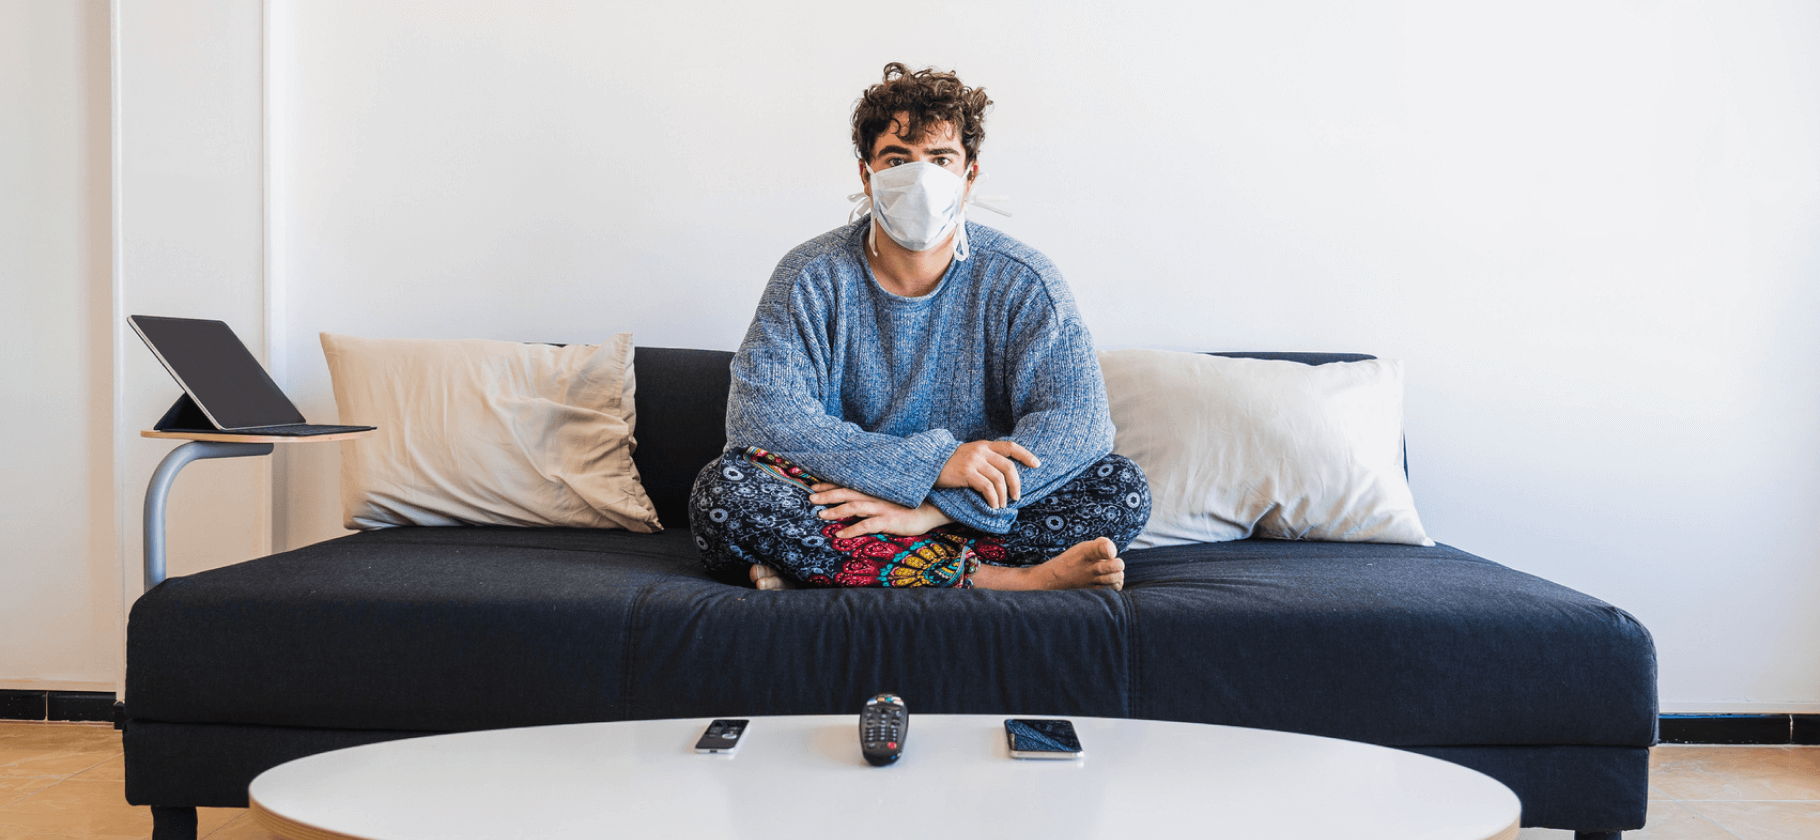 6 коротких вопросов о гриппе, ковиде и ОРВИ